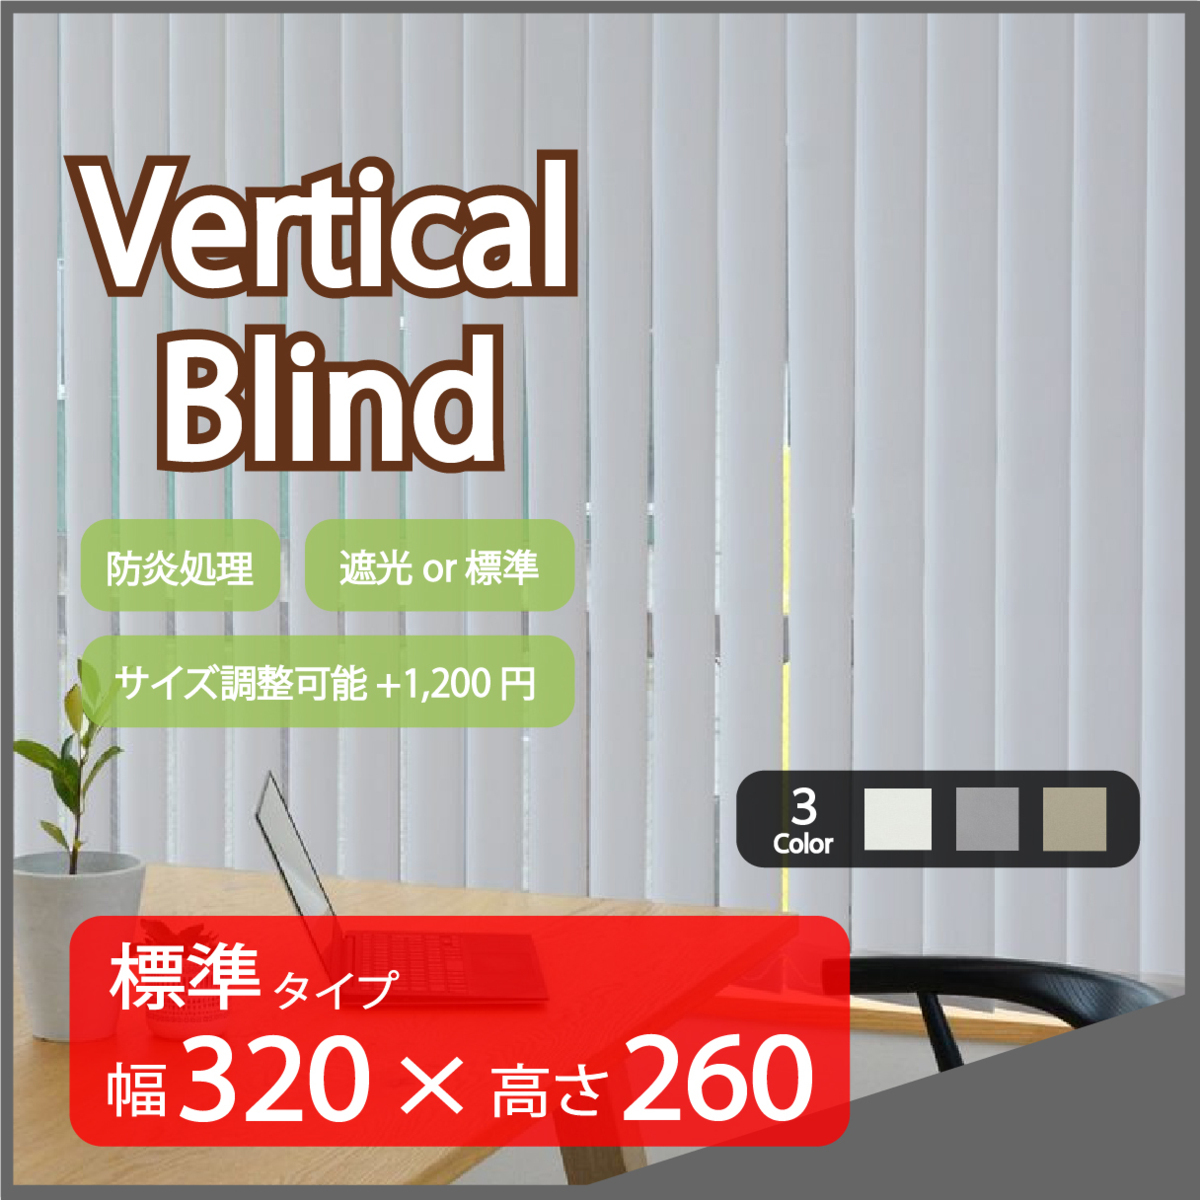 高品質 Verticalblind バーチカルブラインド ライトグレー 標準タイプ タテ型 【日本限定モデル】 ブラインドカーテン 縦型 完璧 幅320cm×高さ260cm サイズ加工可能